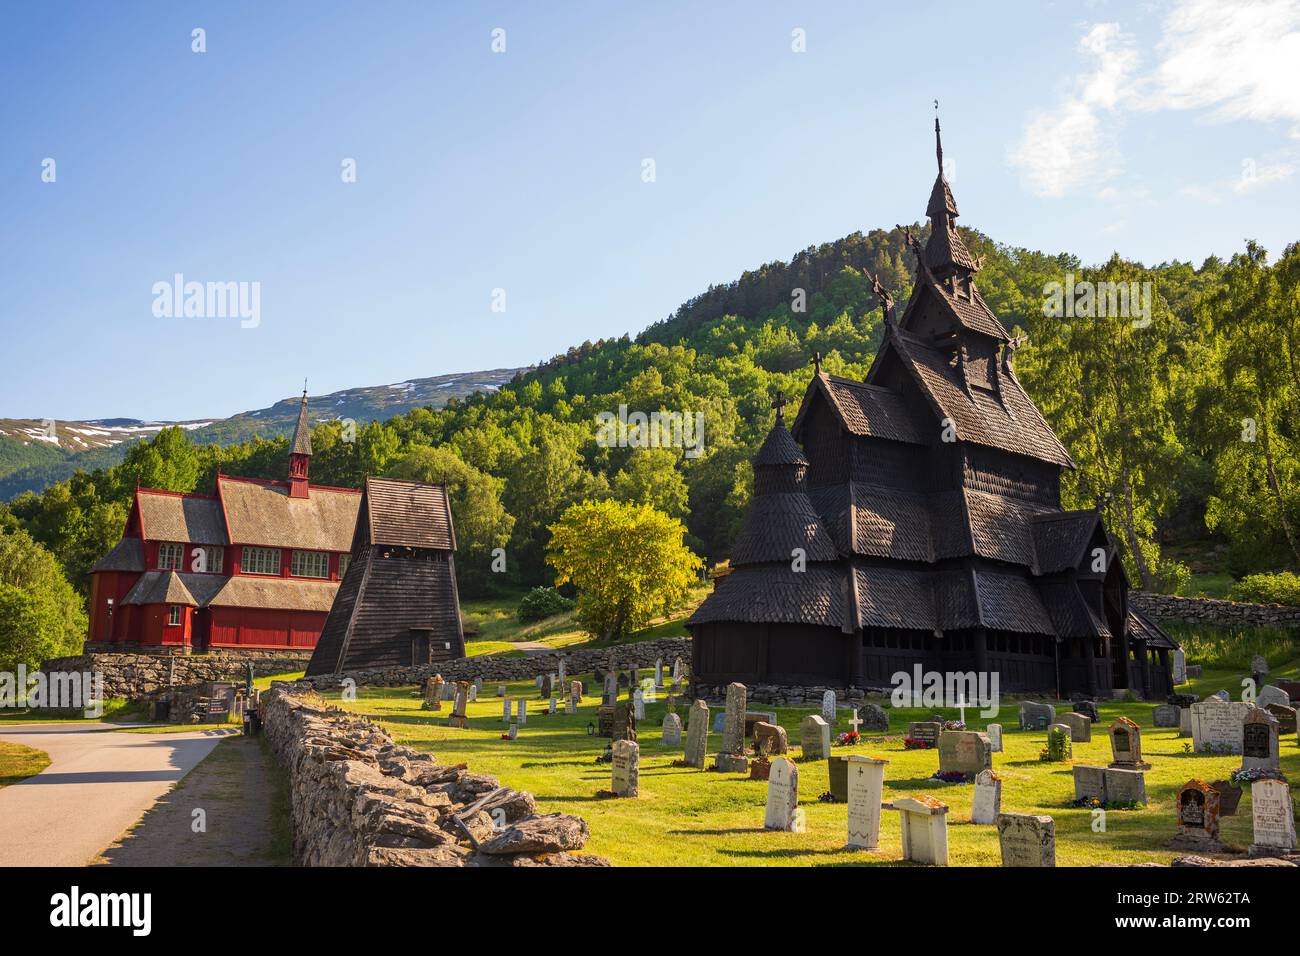 La chiesa restaurata di Borgund Stave, situata nella contea di Vestland, in Norvegia, fu costruita circa 800 anni fa. La chiesa viene fotografata in una sera d'estate Foto Stock